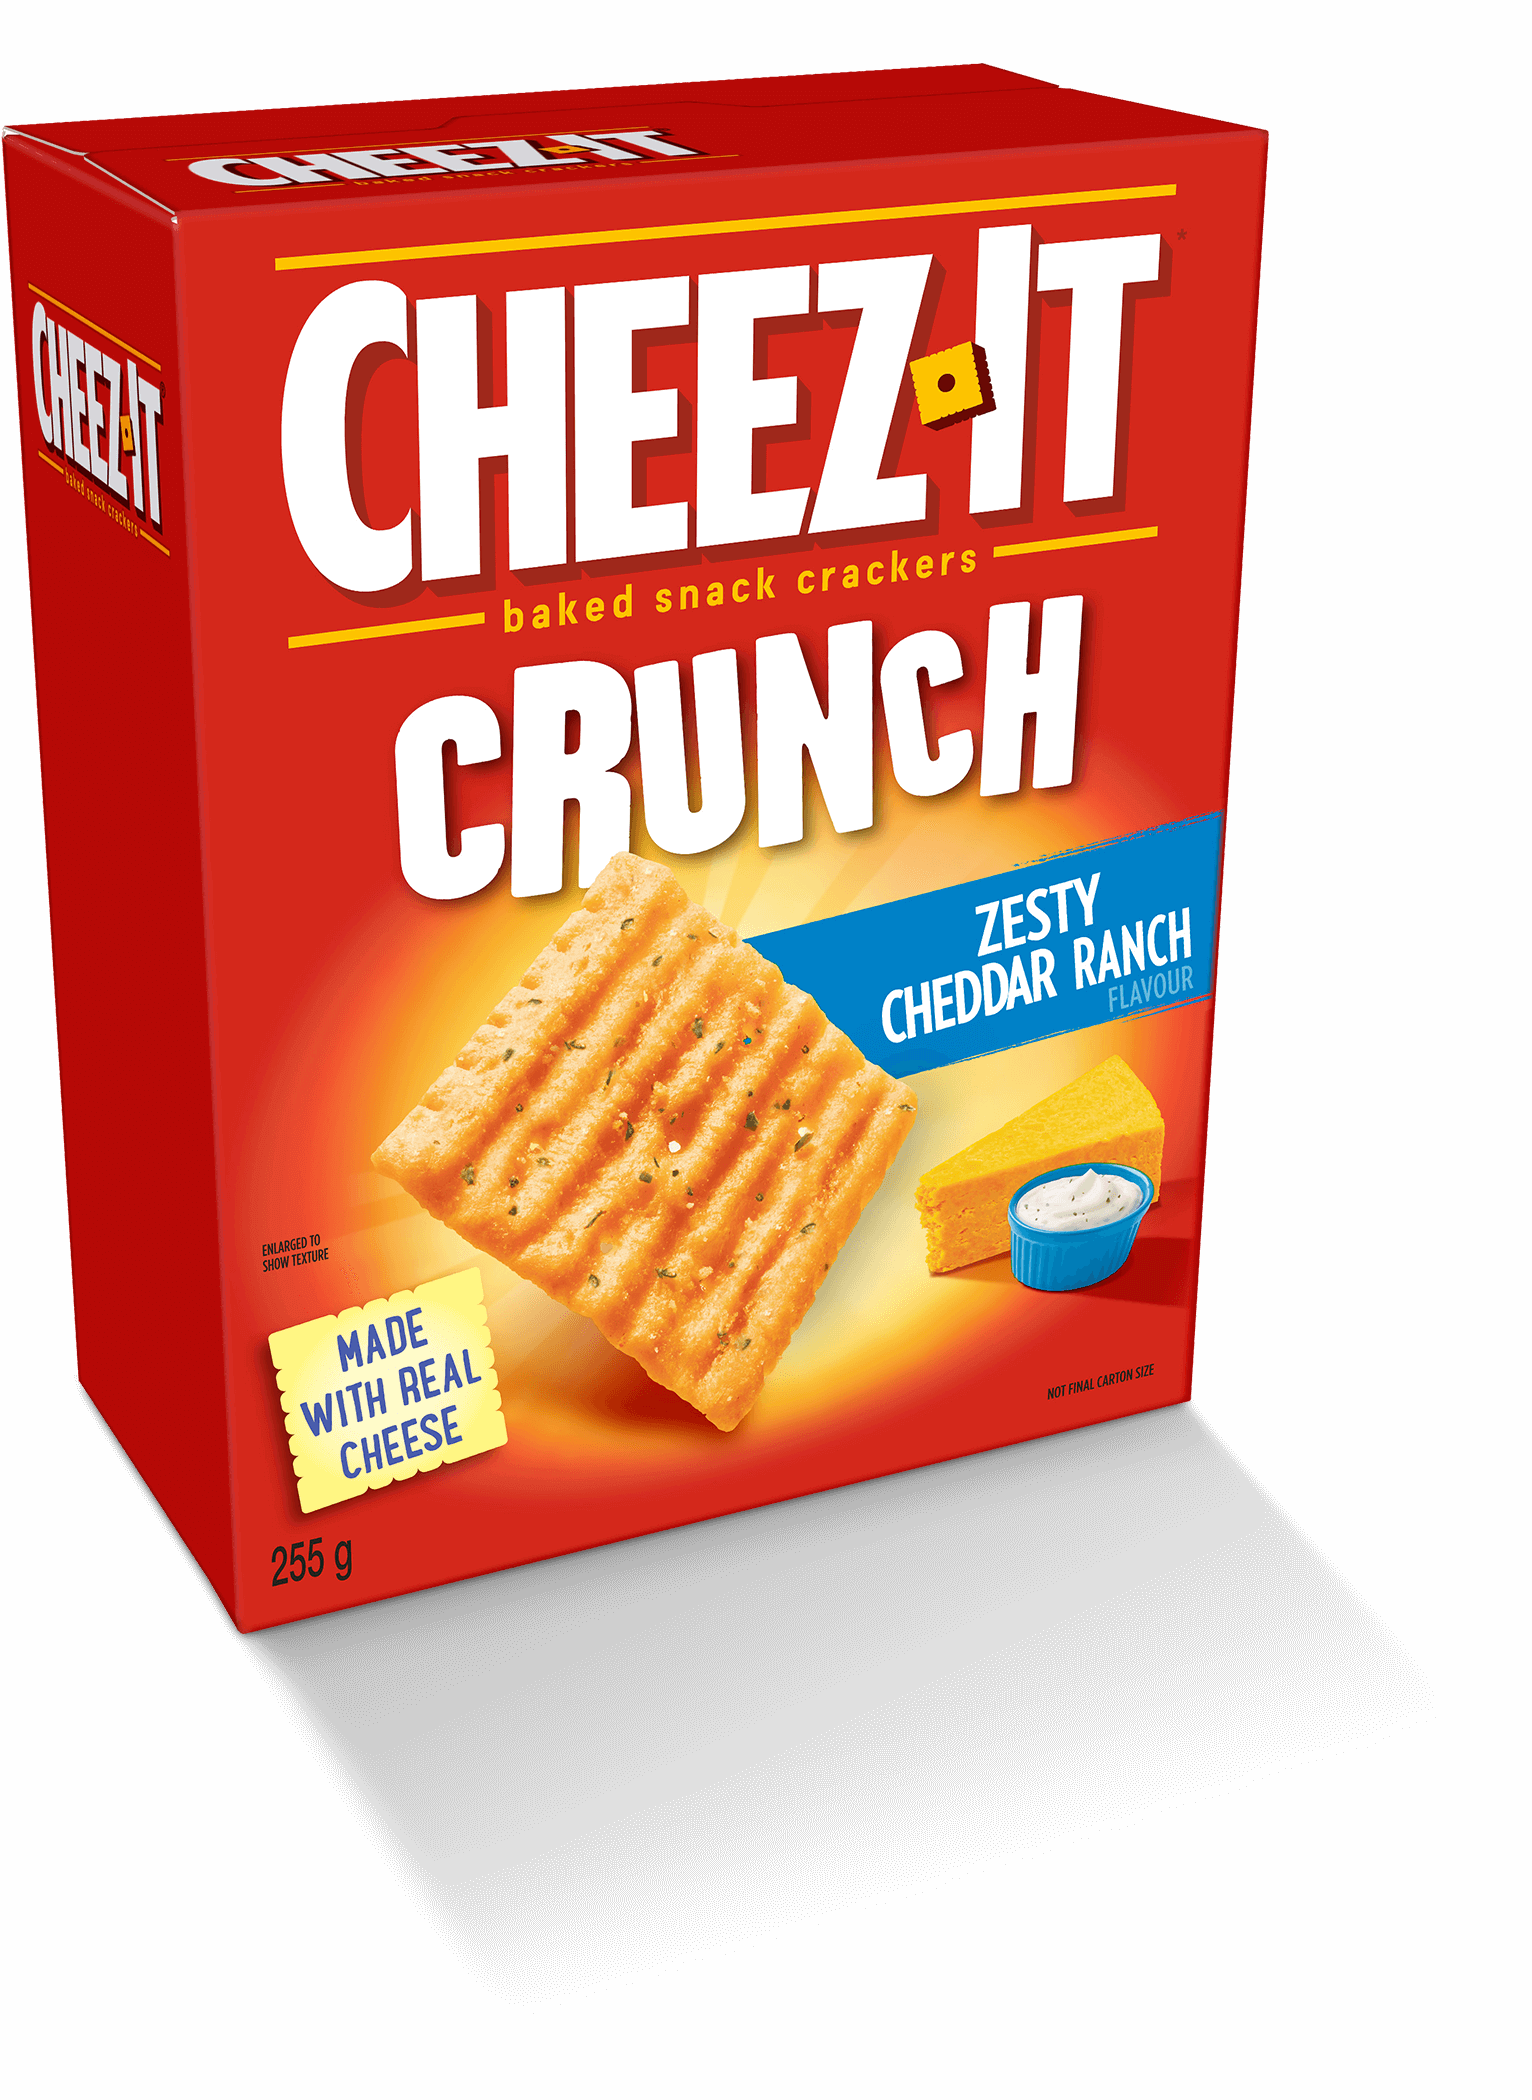 Cheez-It Crunch: Zesty Cheddar Ranch (191g)